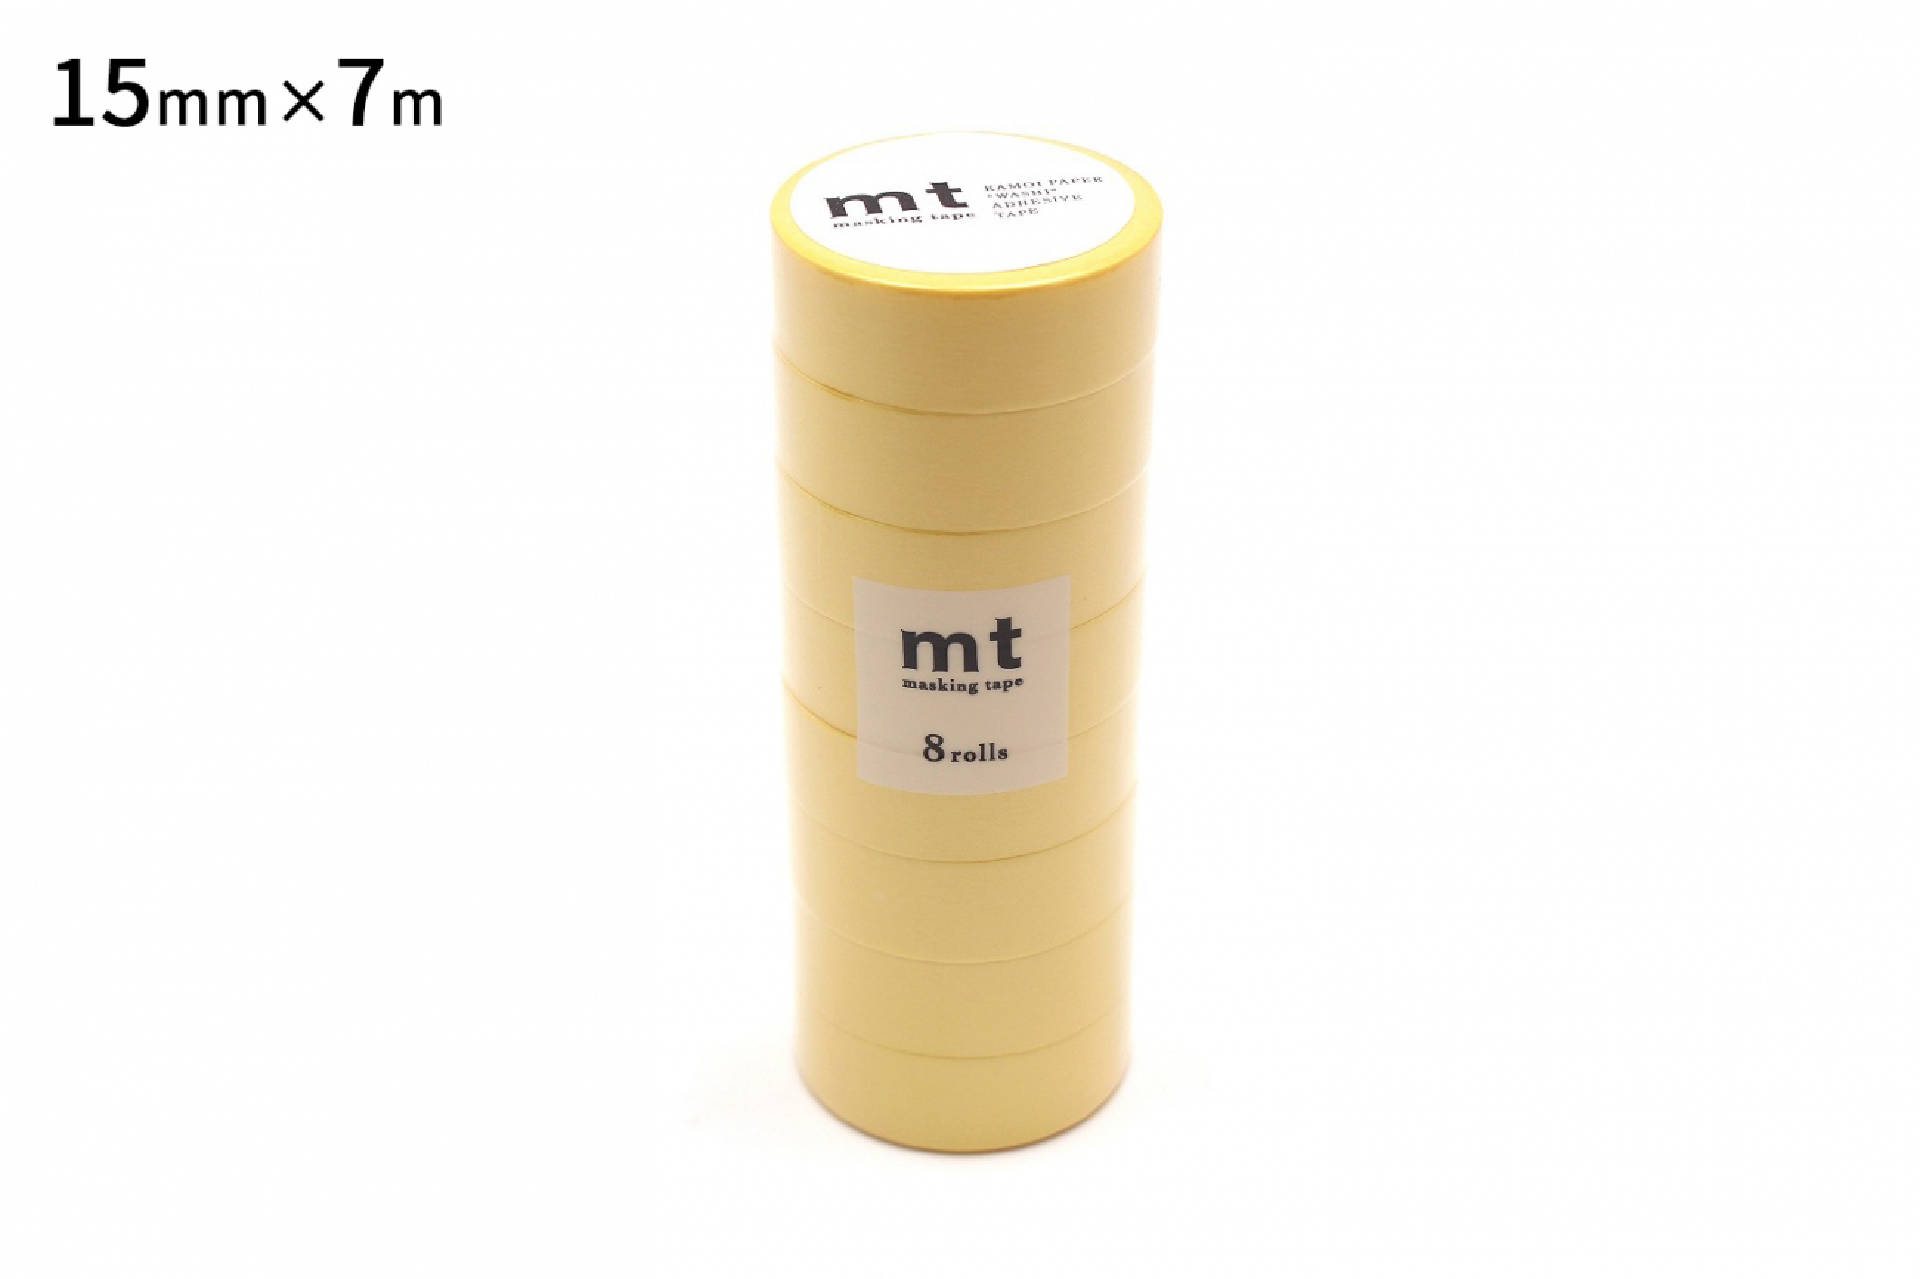 mt 8P たまご(15mm×7m) | mt 8パック basic | マスキングテープ「mt